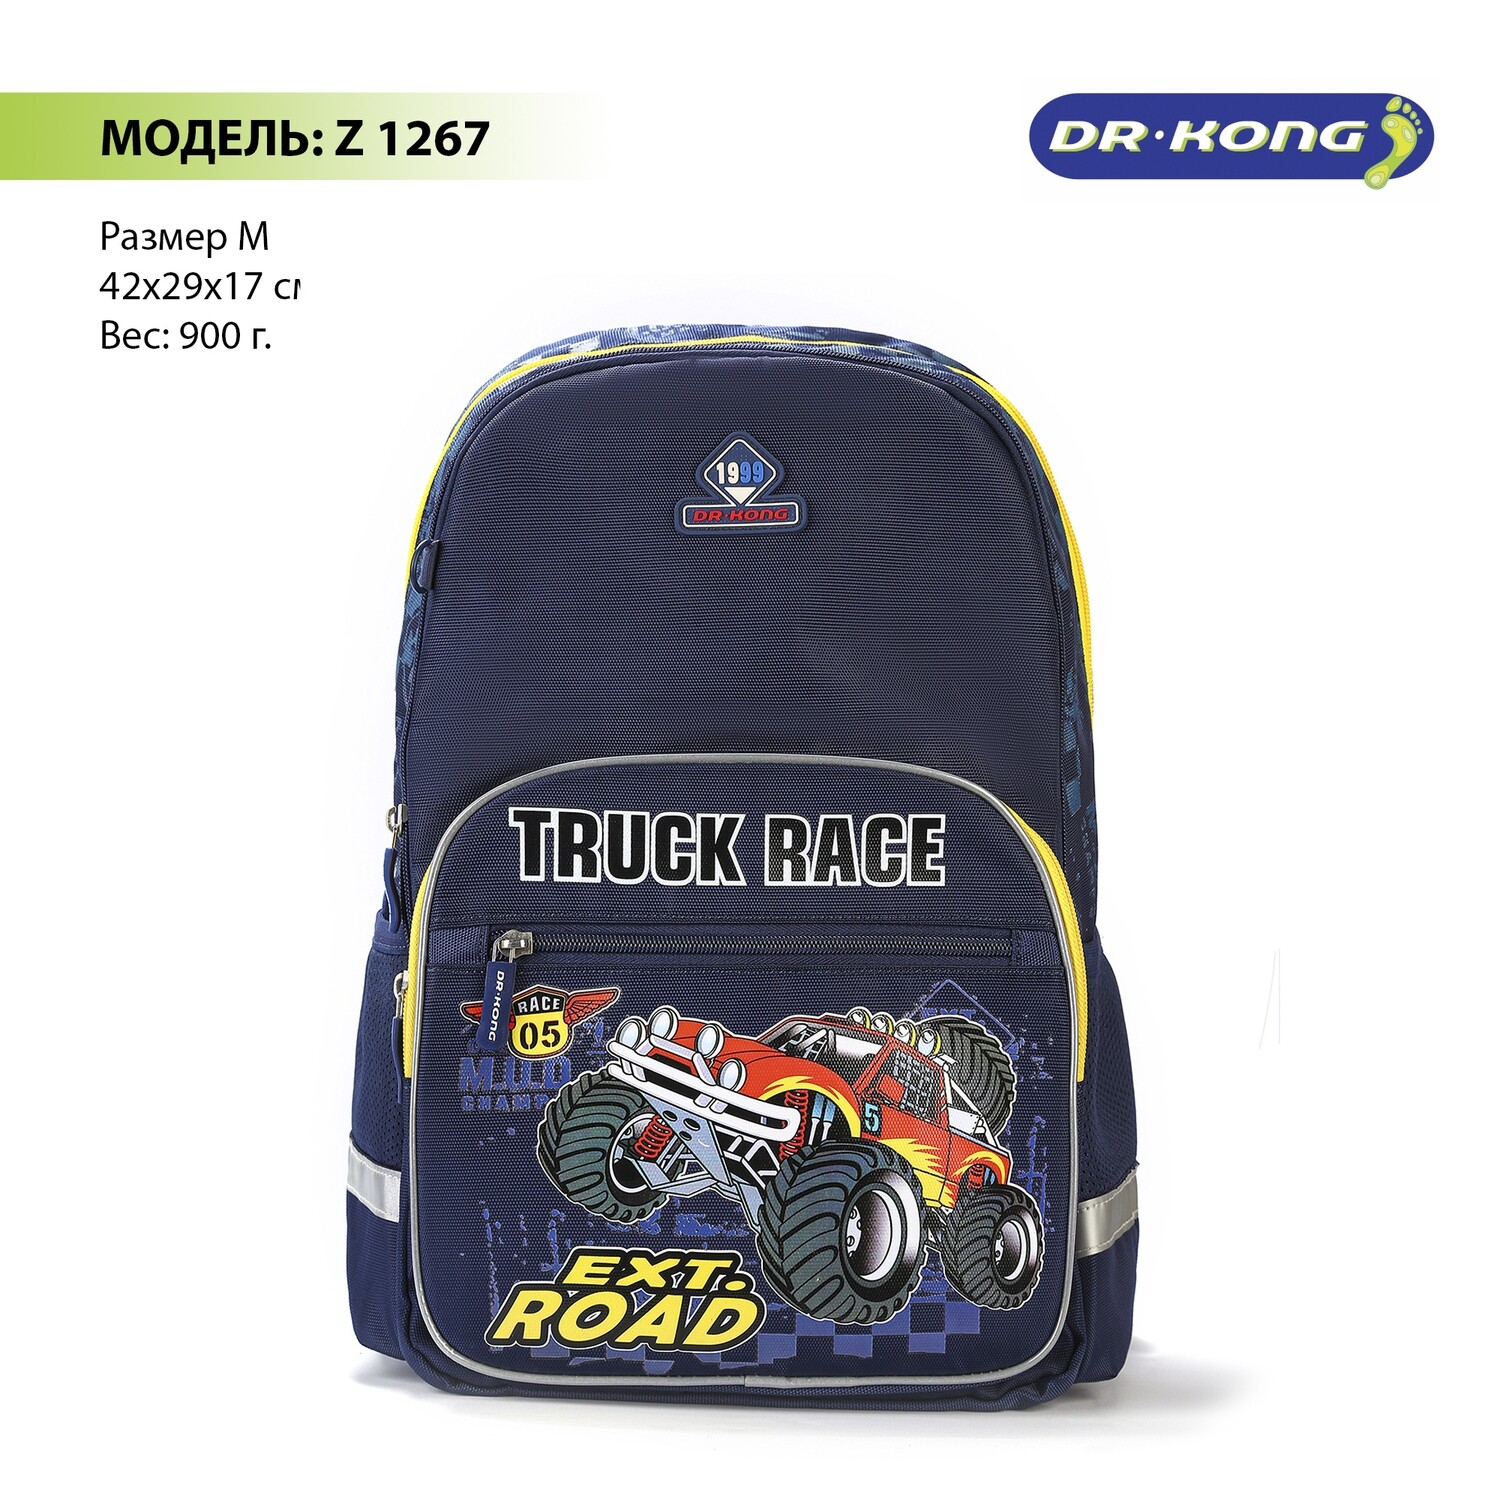 Школьный рюкзак DR.KONG Z 1267 для мальчиков на рост 130-150 см